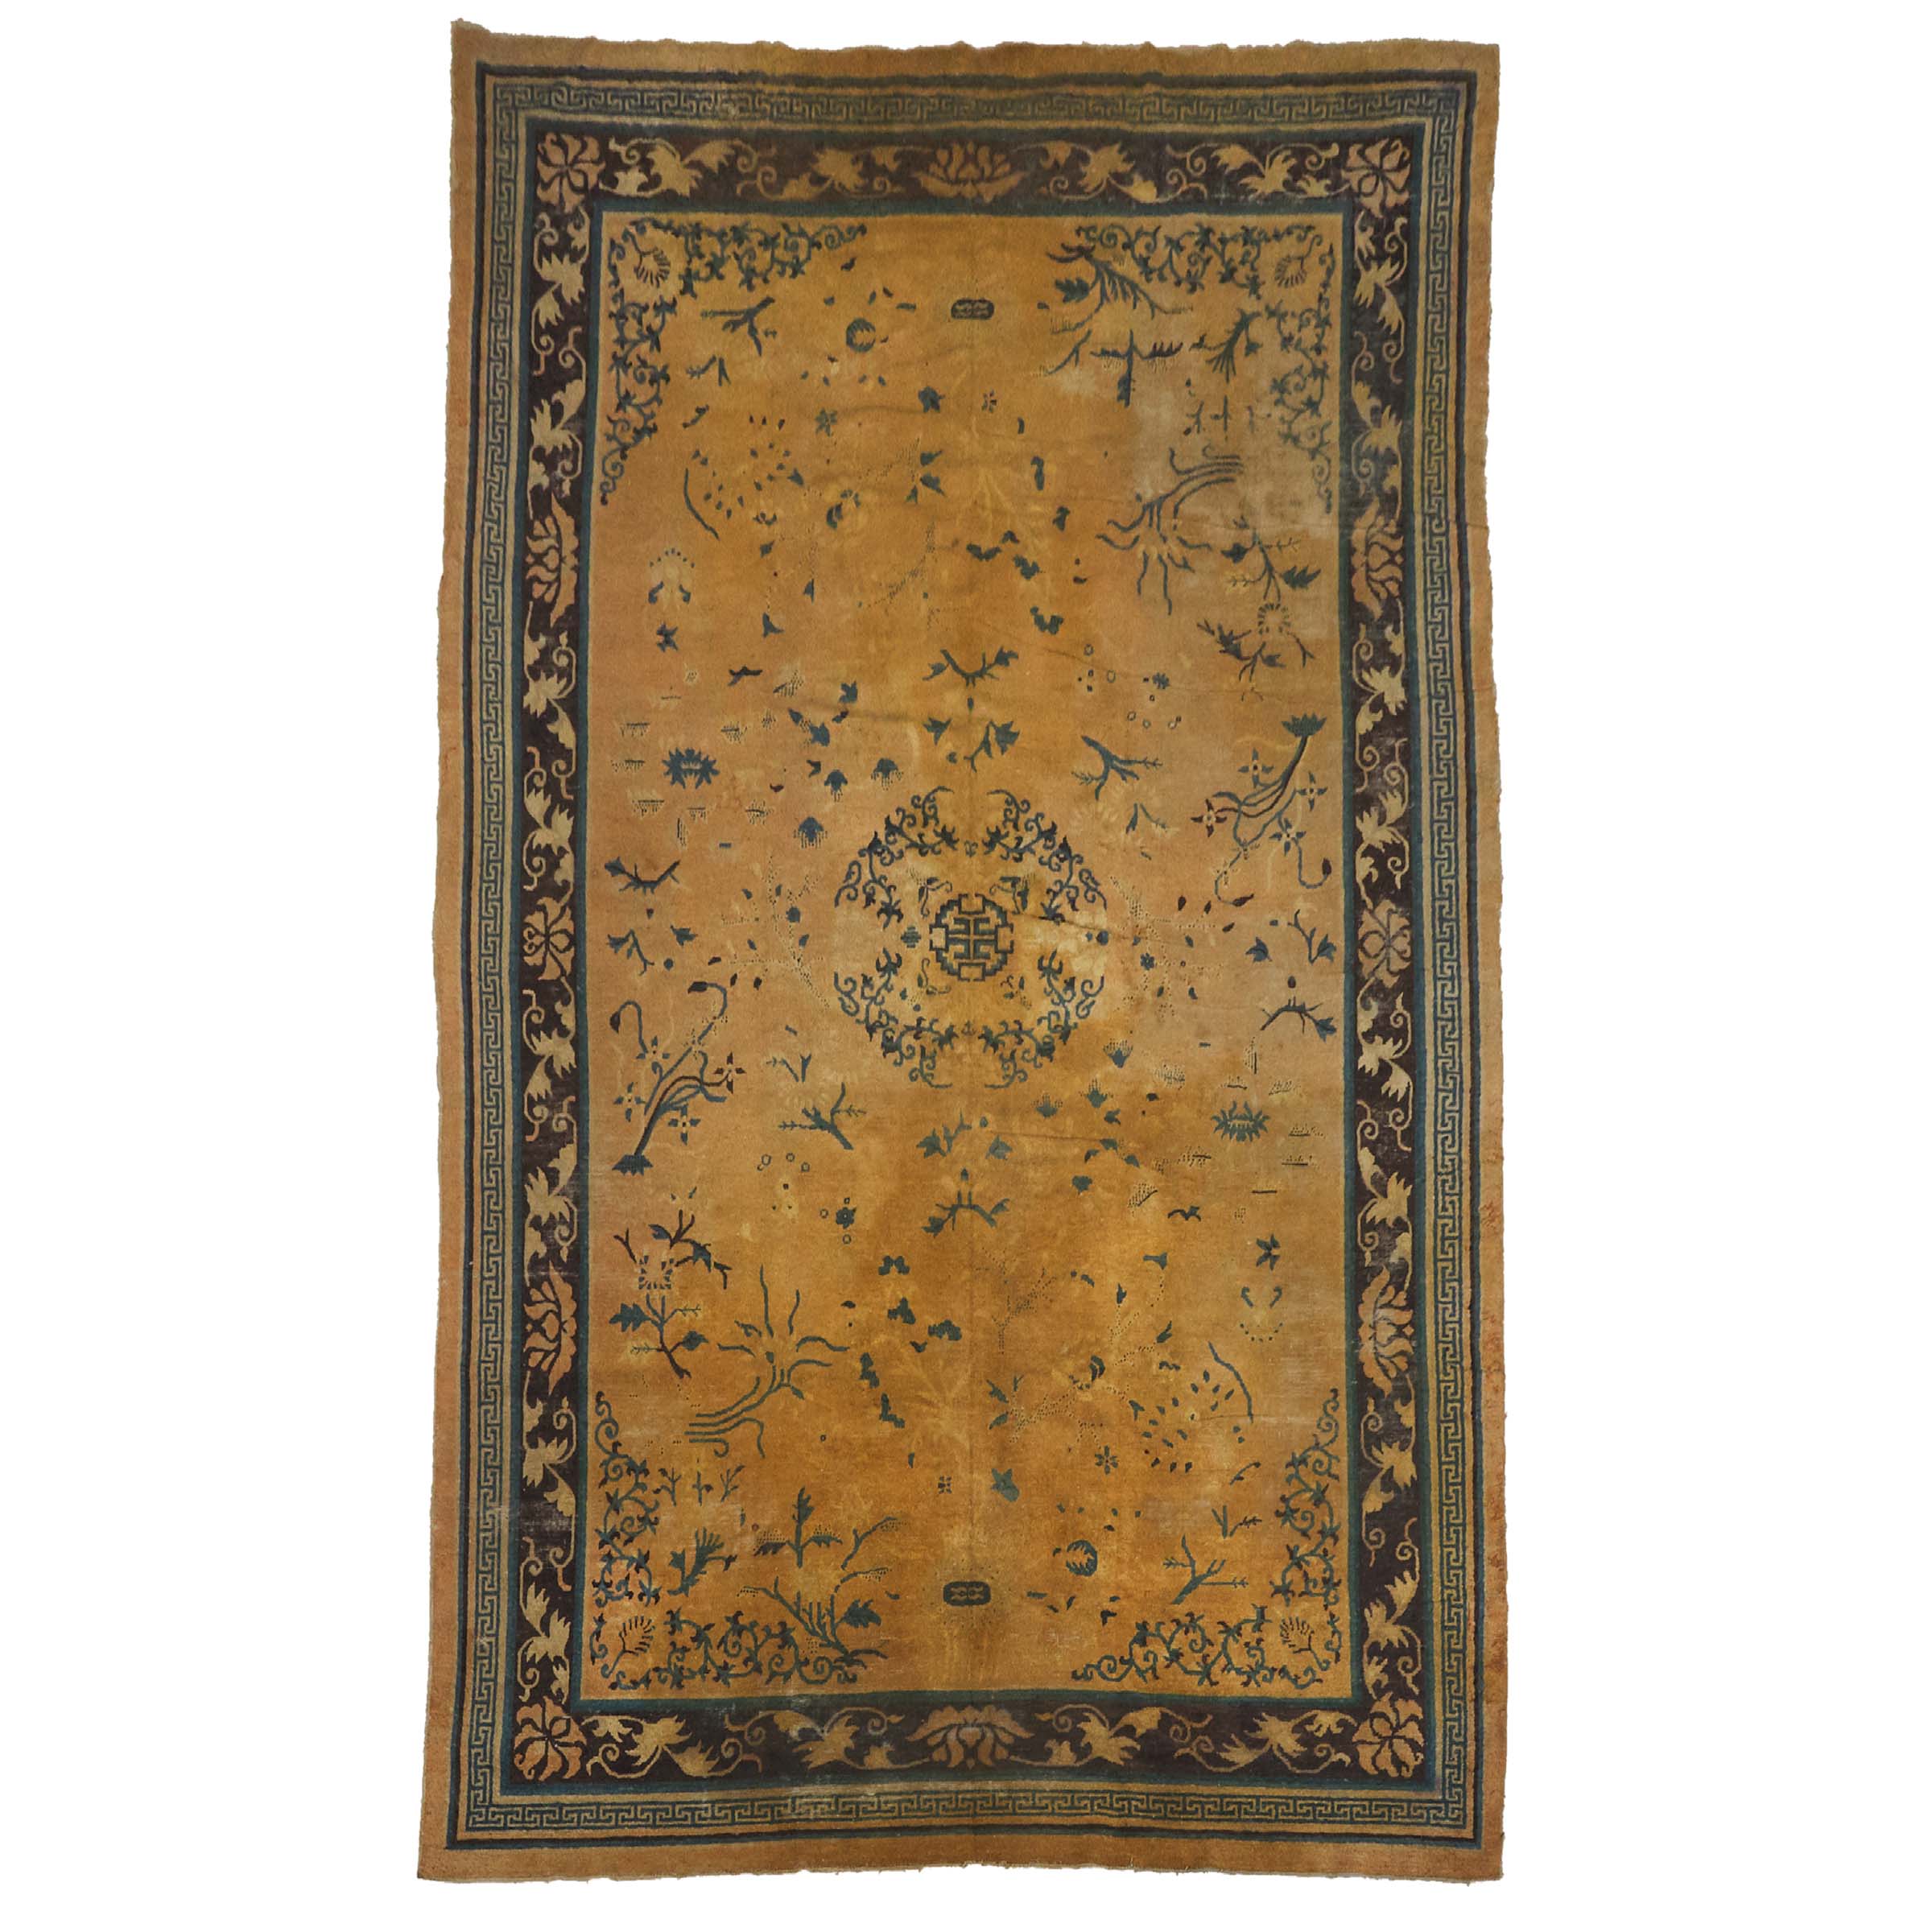 Chinese Ningxia Carpet, c.1870/80